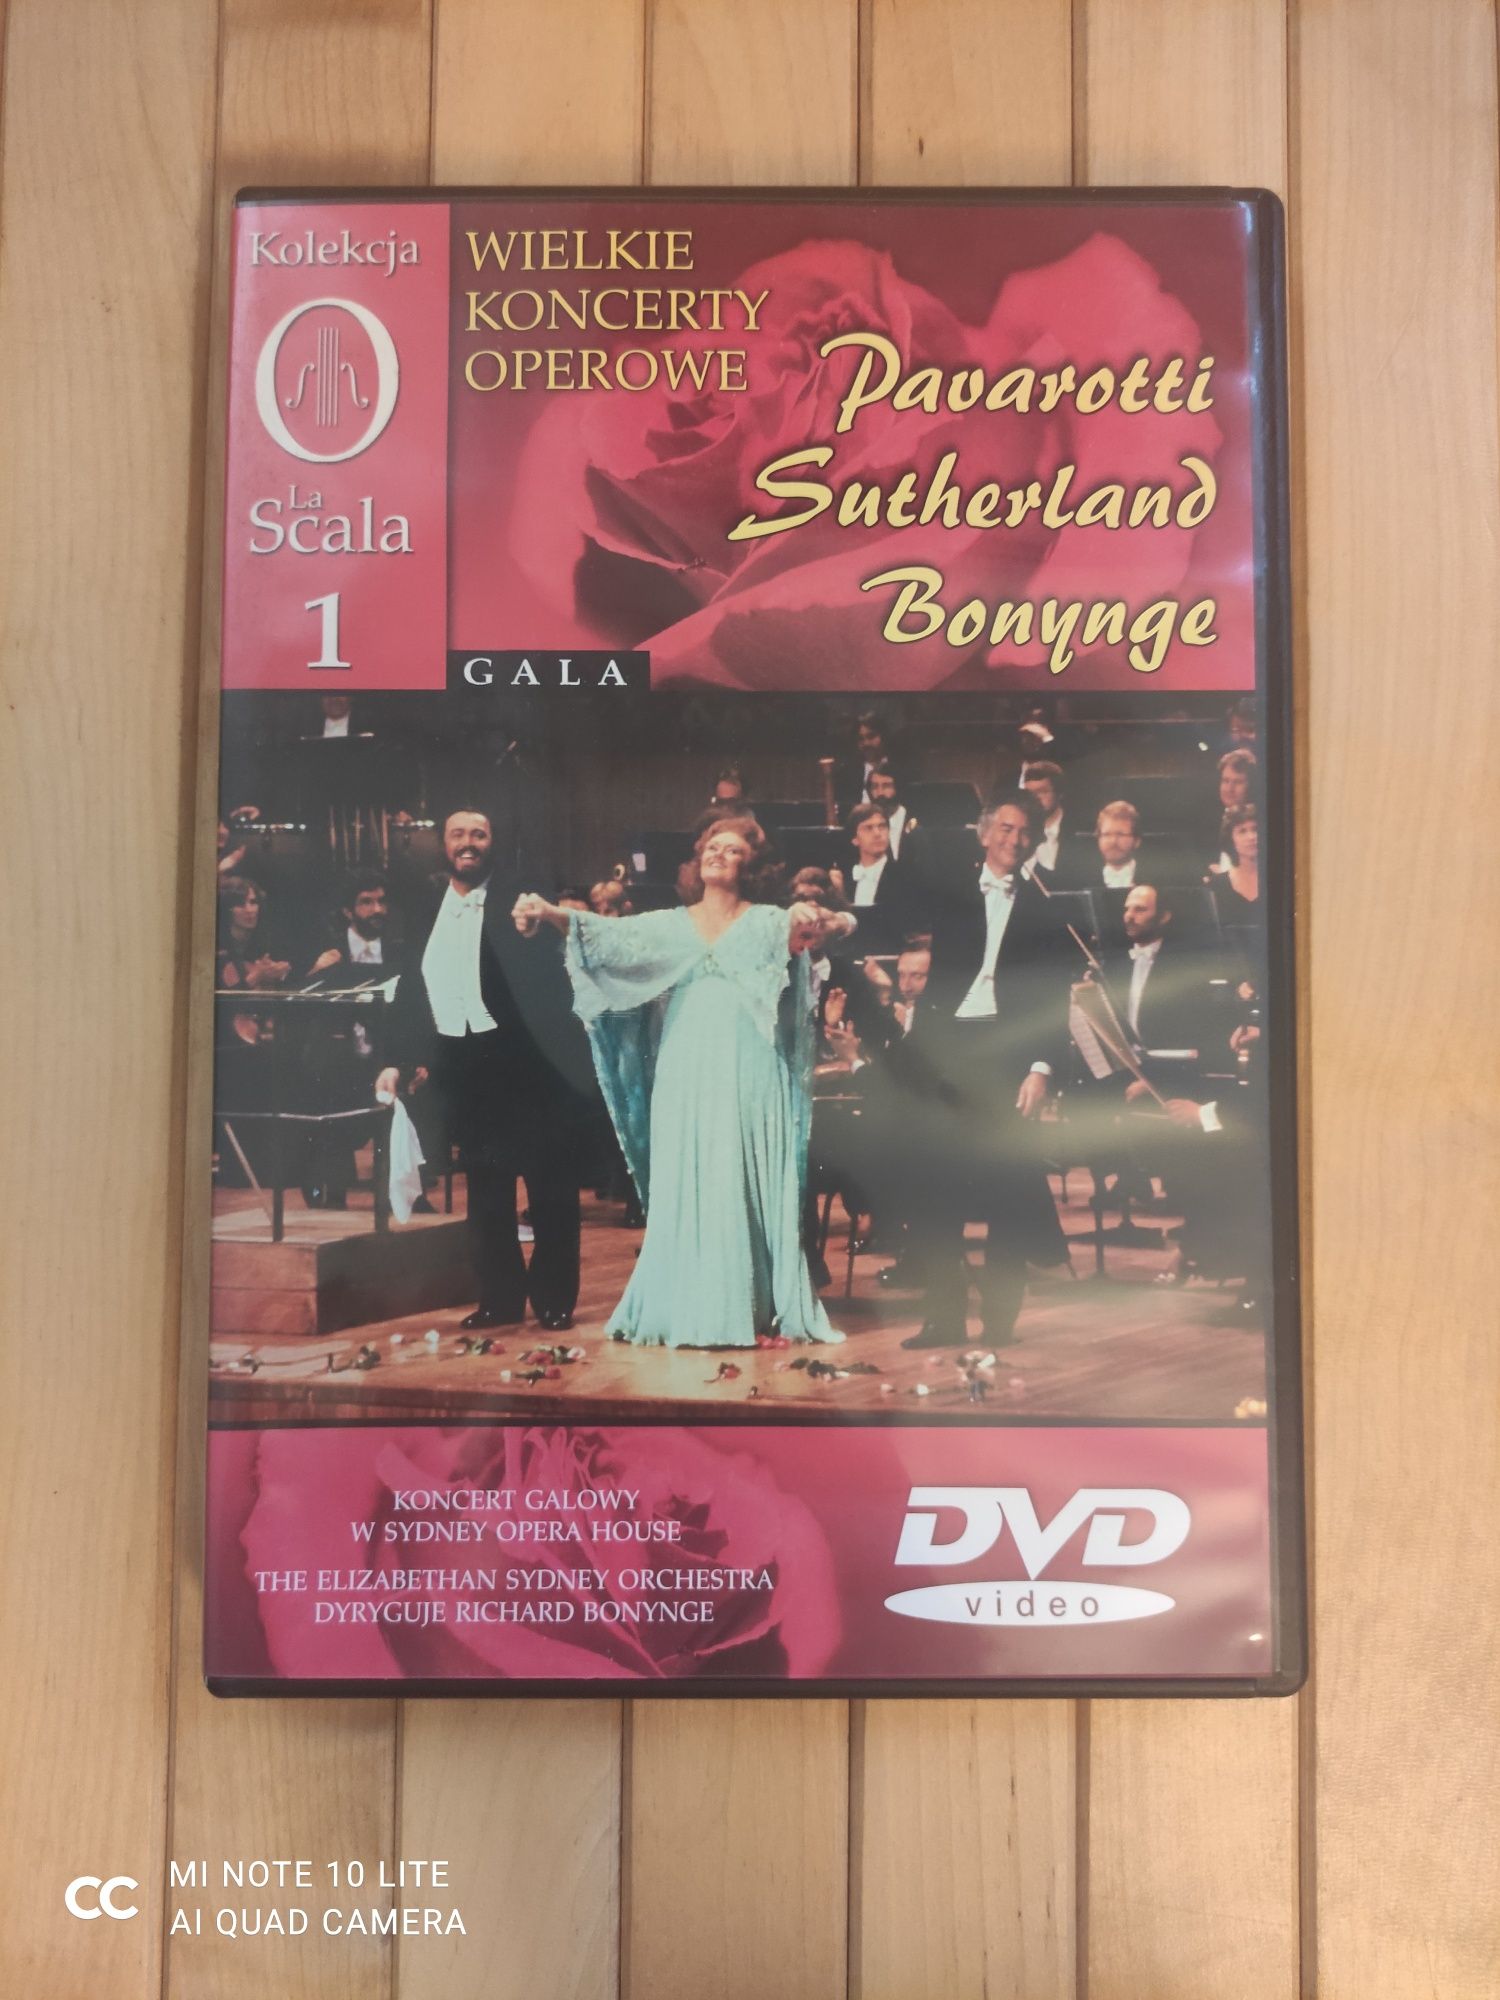 La Scala "Wielkie koncerty operowe" Płyta numer 1